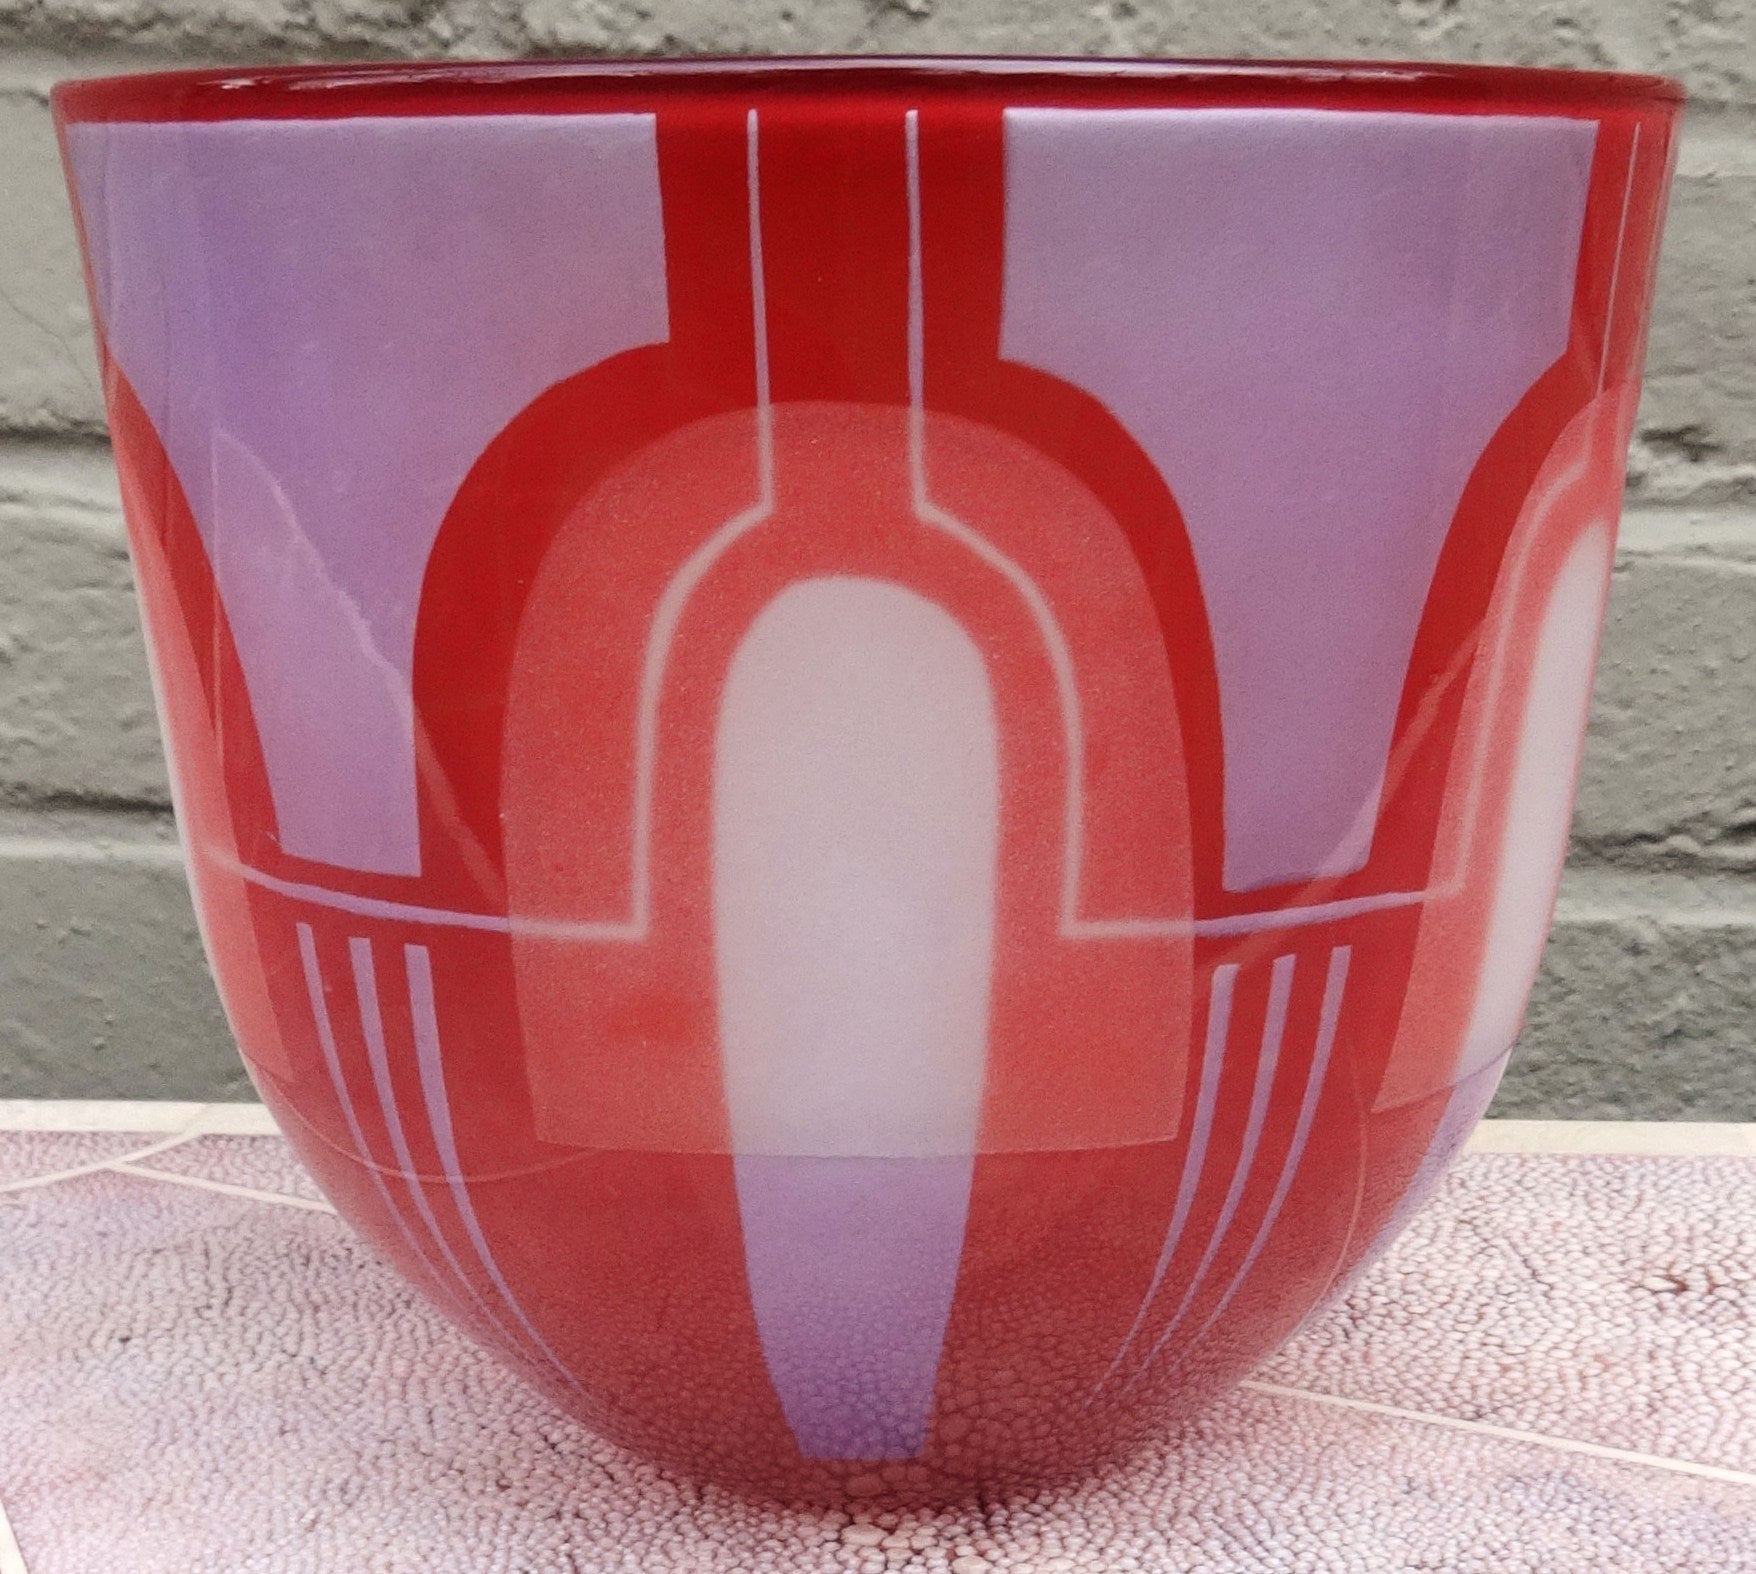 Tom Hart Art Glass Bowl, 1982